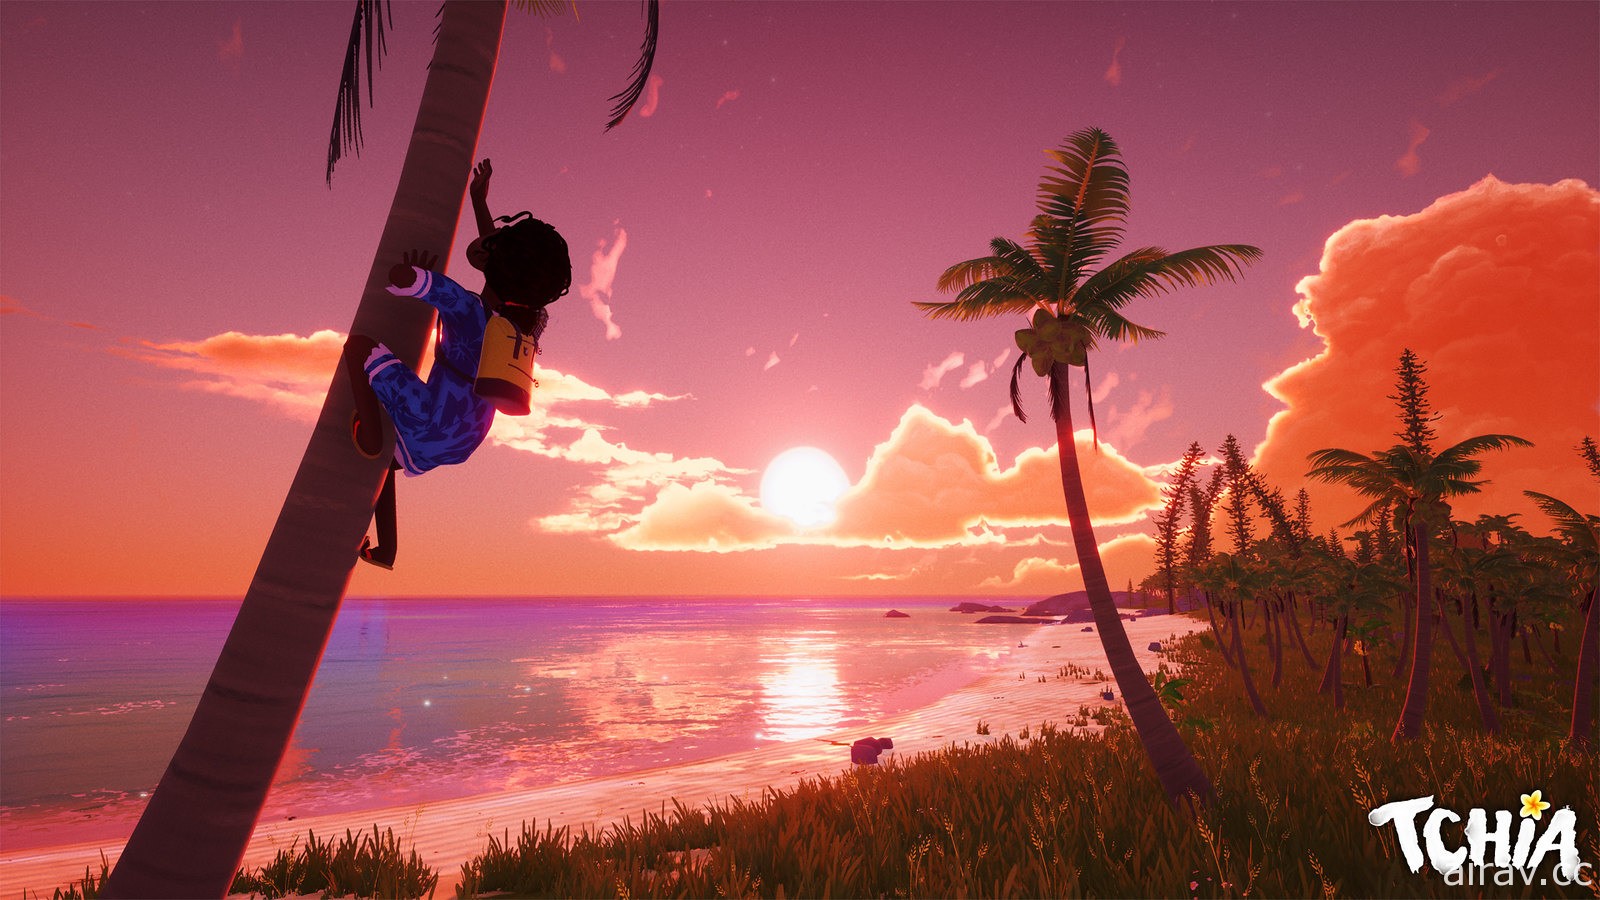 融入太平洋熱帶島嶼文化元素冒險新作《Tchia》釋出新遊玩影片